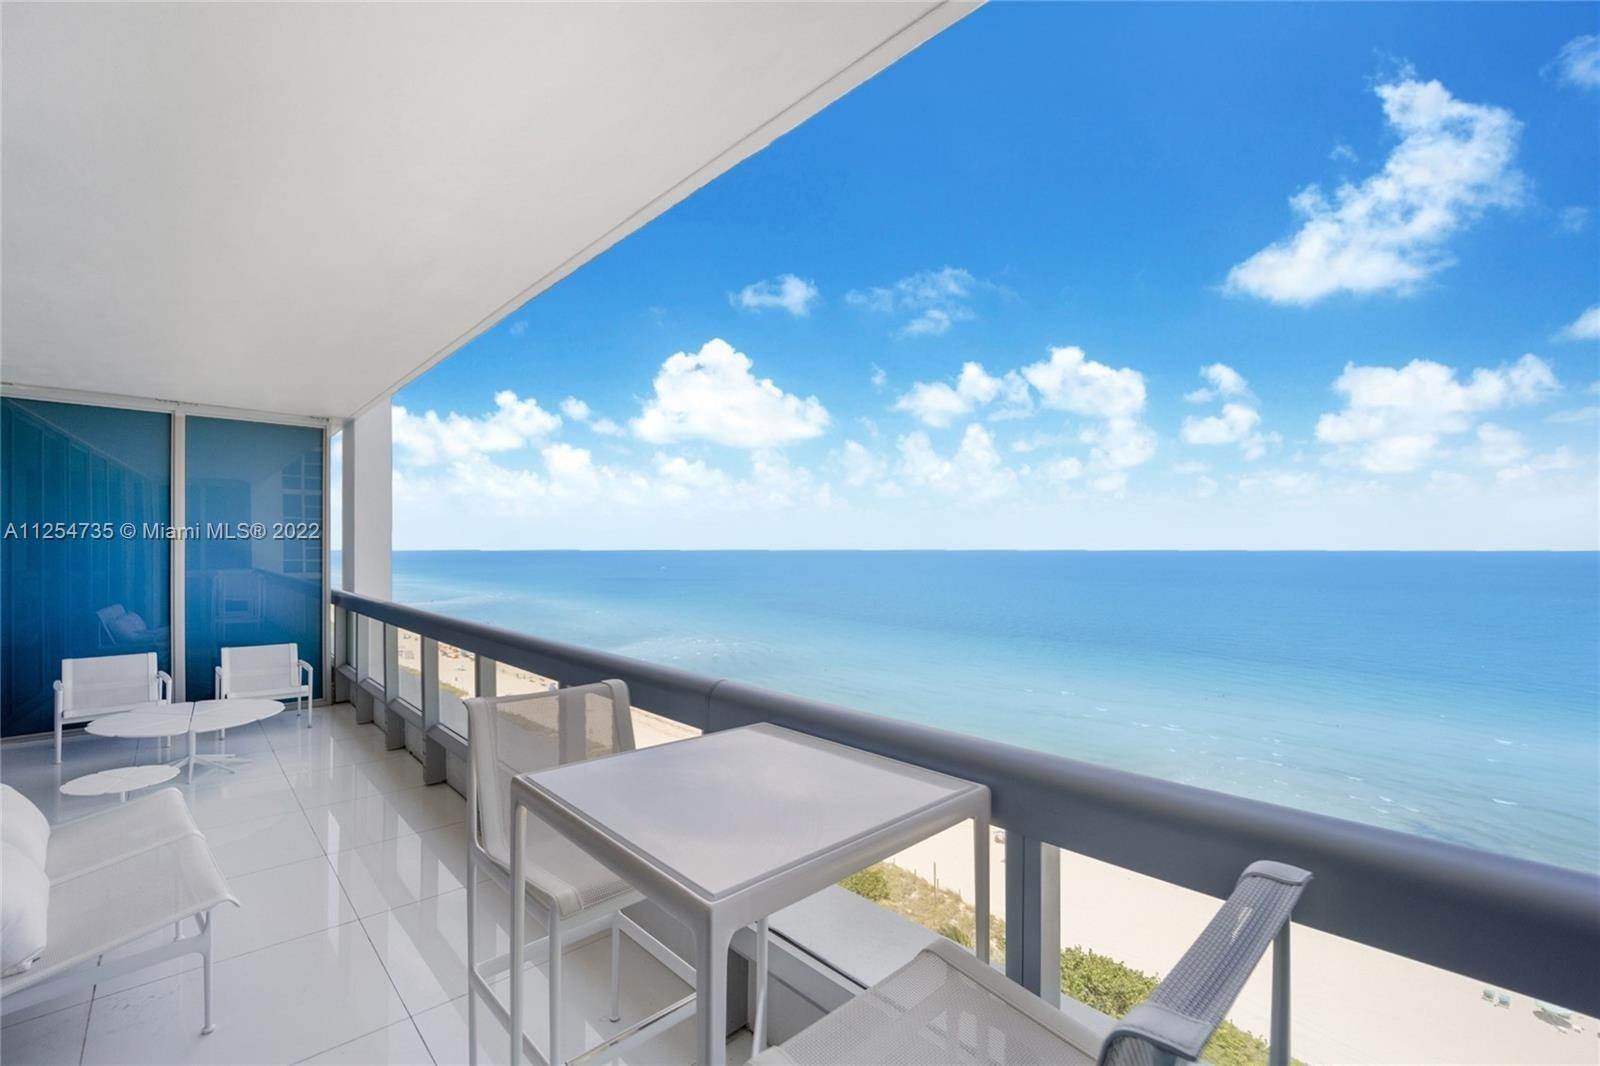 公寓 为 销售 在 Atlantic Heights, 迈阿密海滩, FL 33141